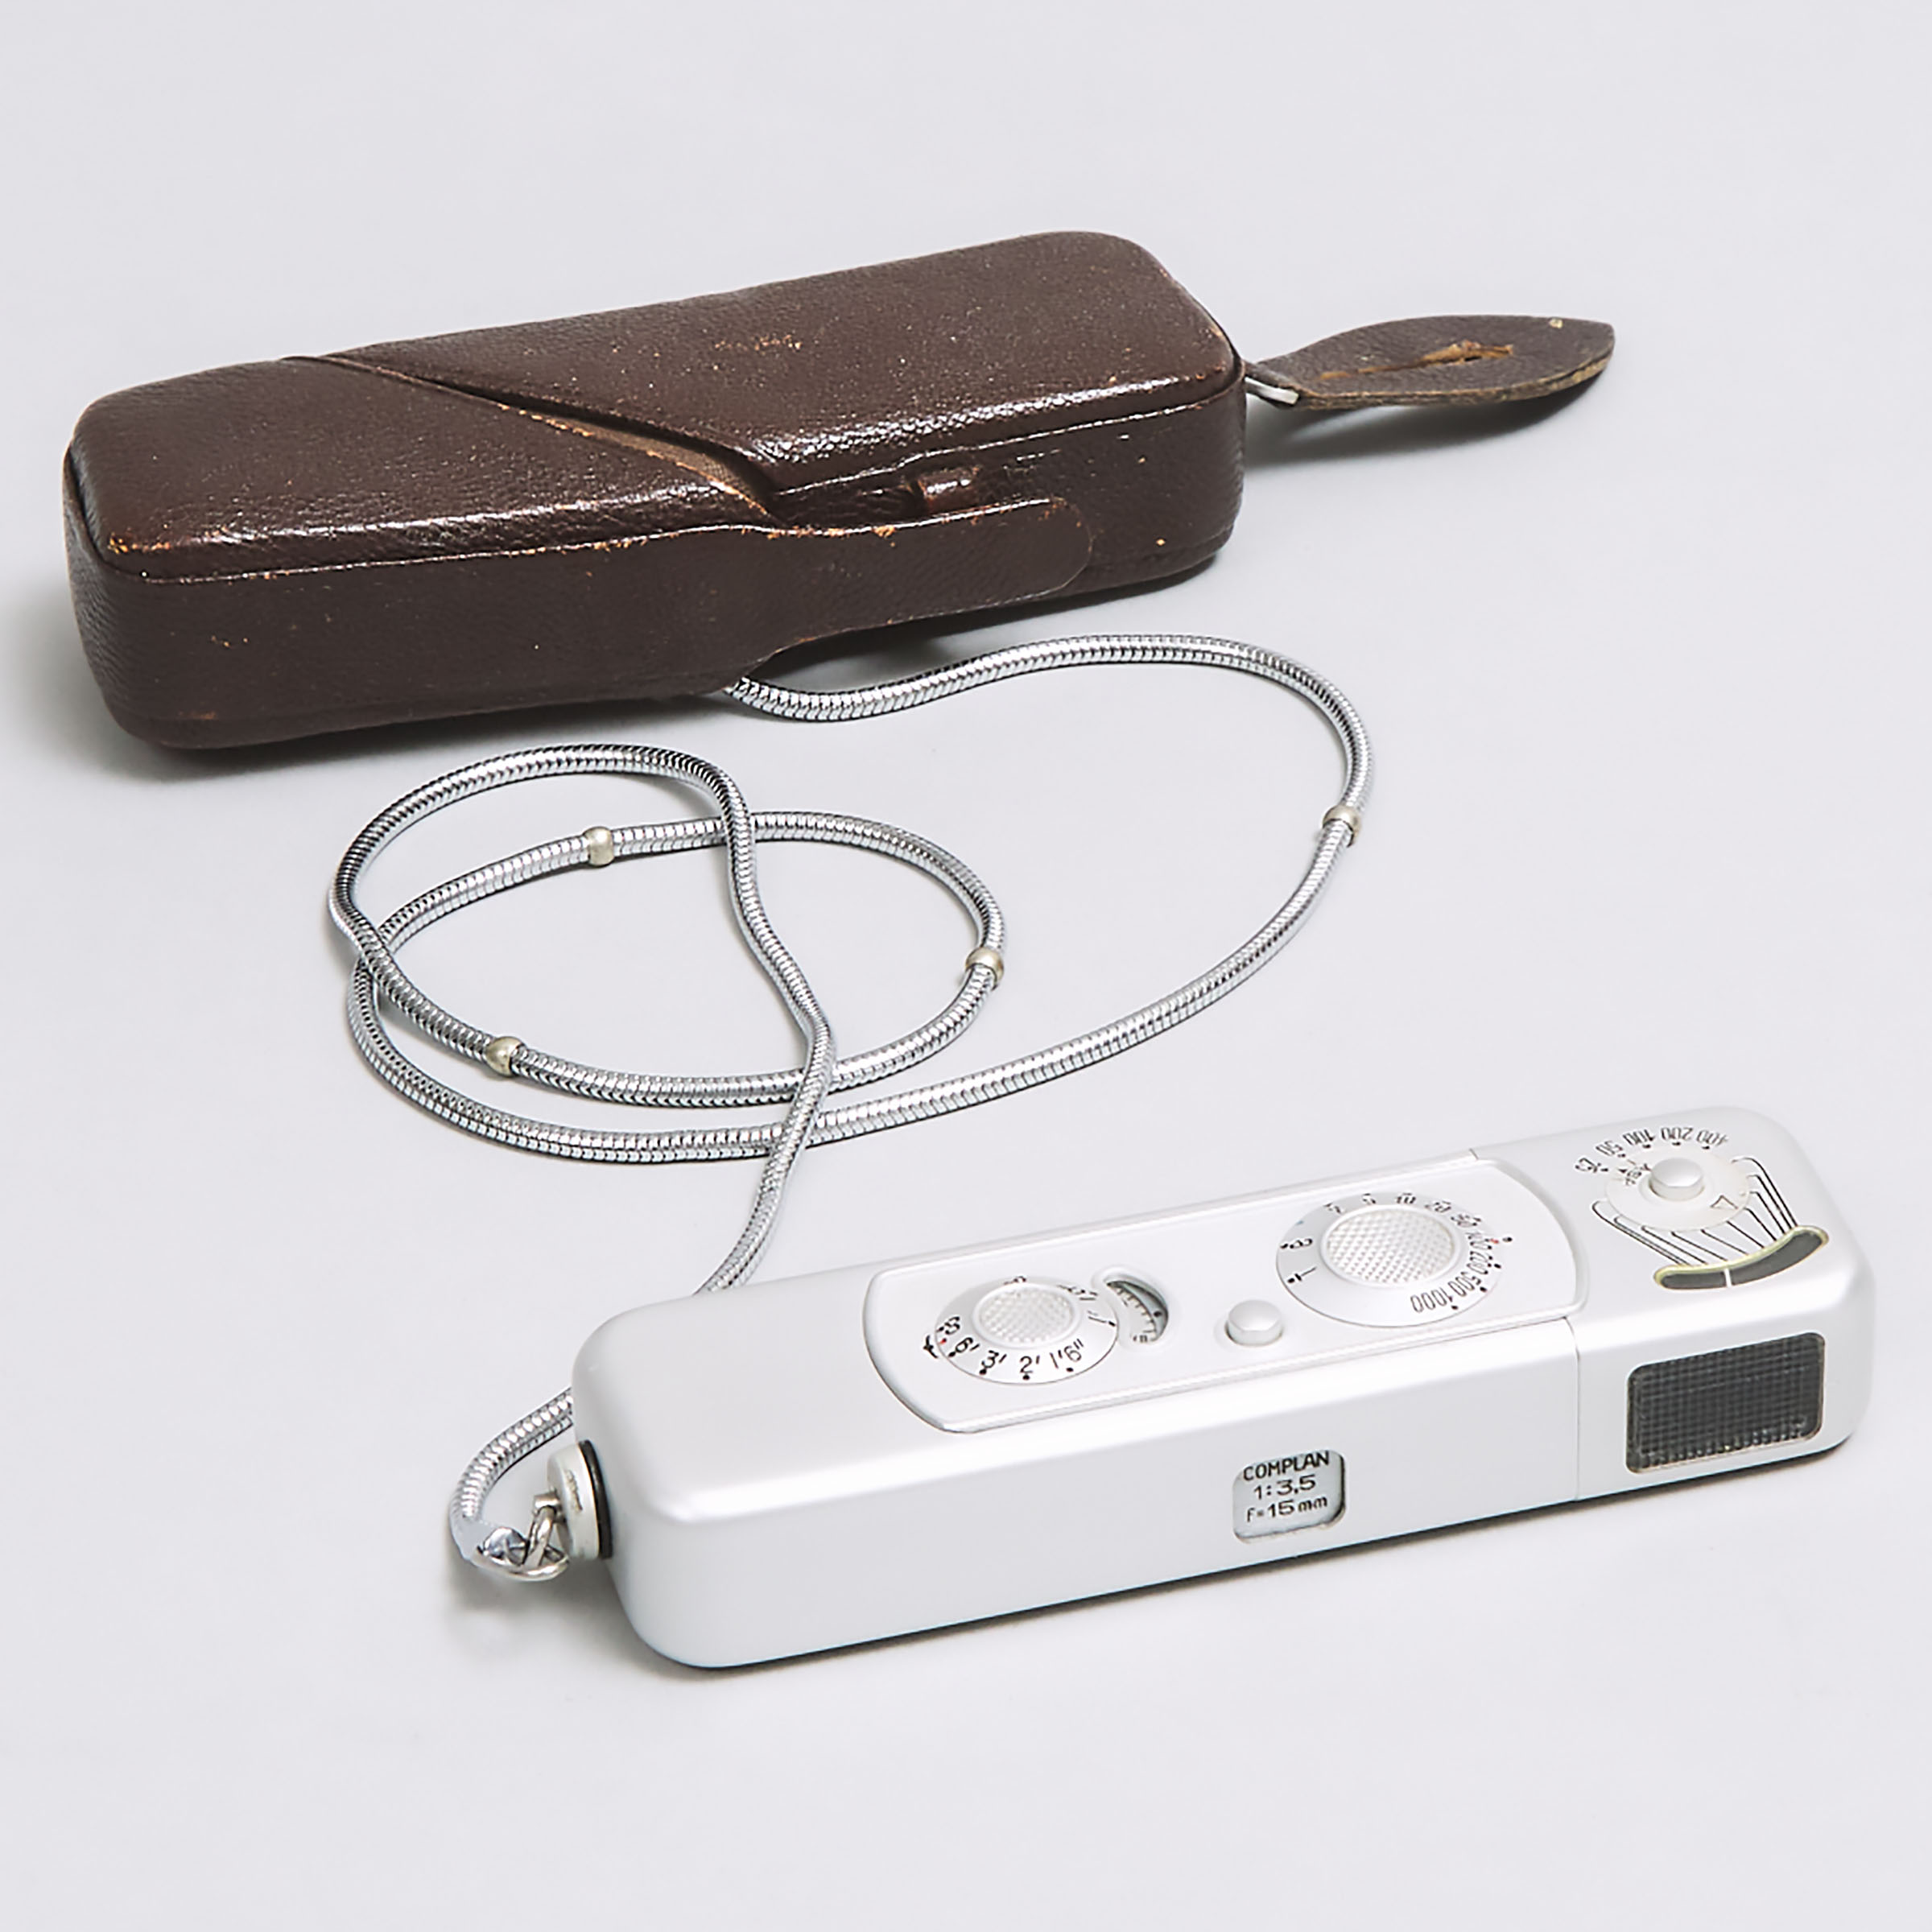 German Minox Subminiature 'Spy' Camera, c.1958